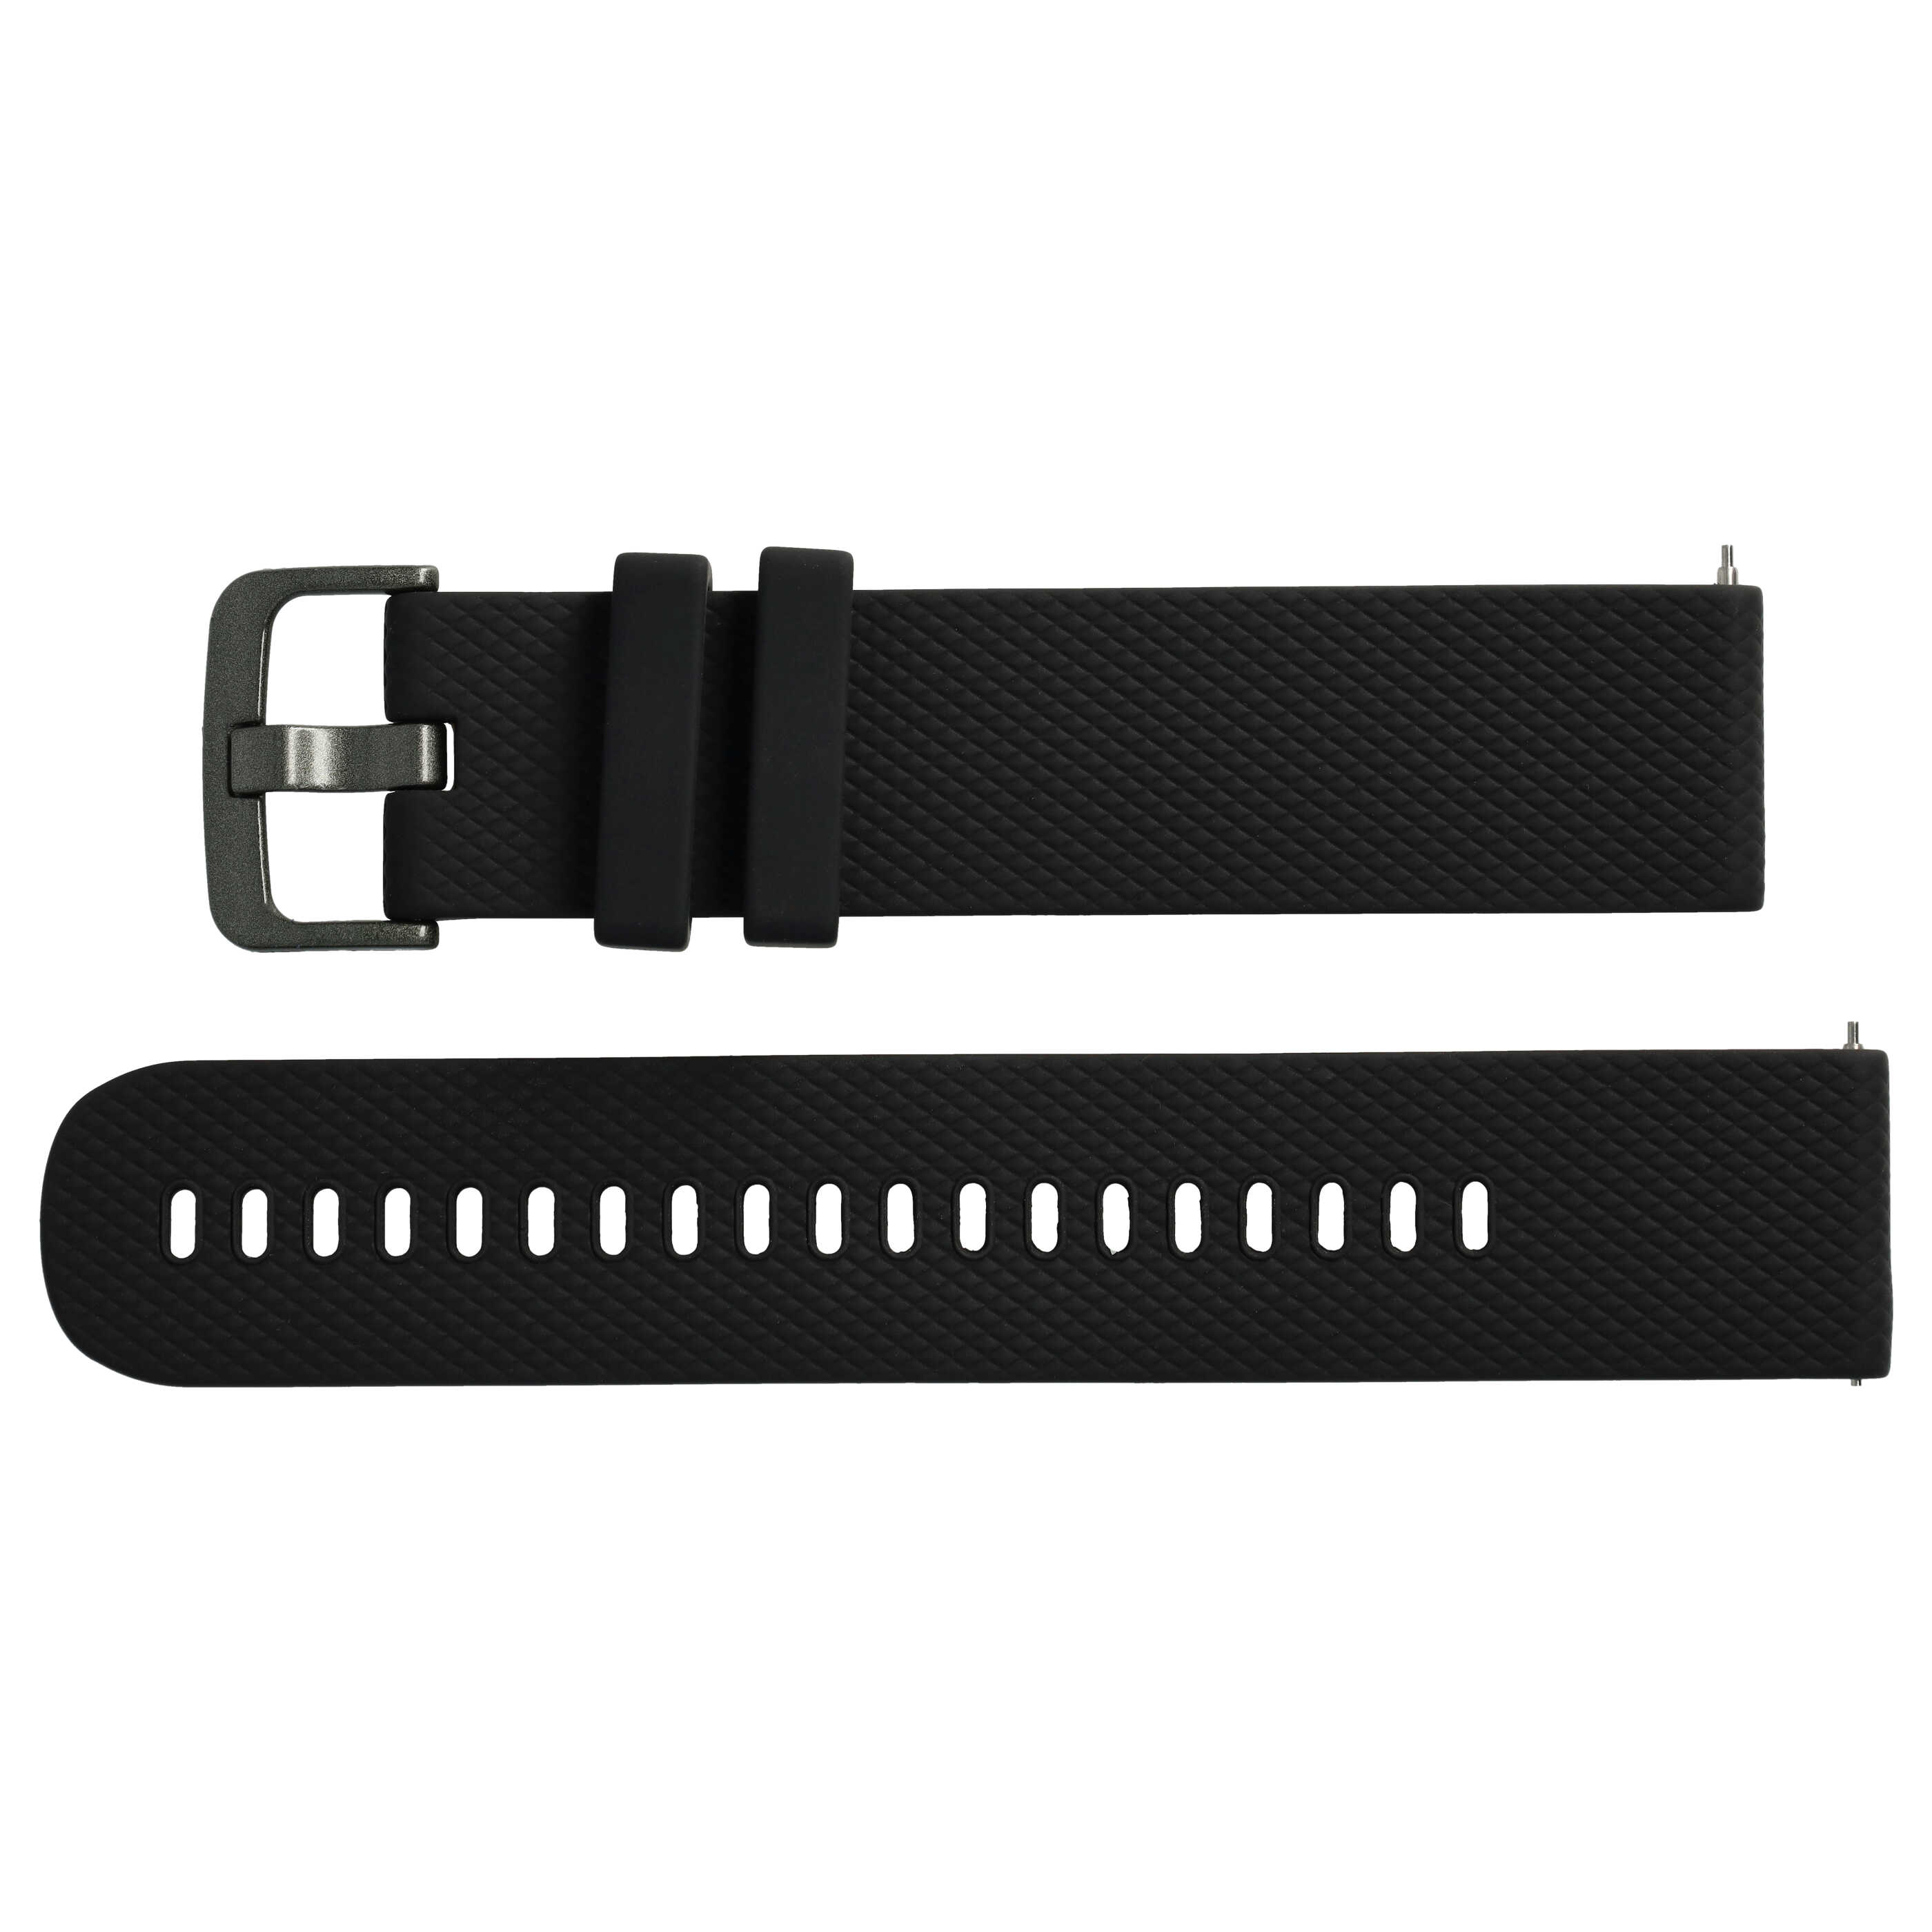 cinturino L per Samsung Galaxy Watch Smartwatch - fino a 270 mm circonferenza del polso, silicone, nero